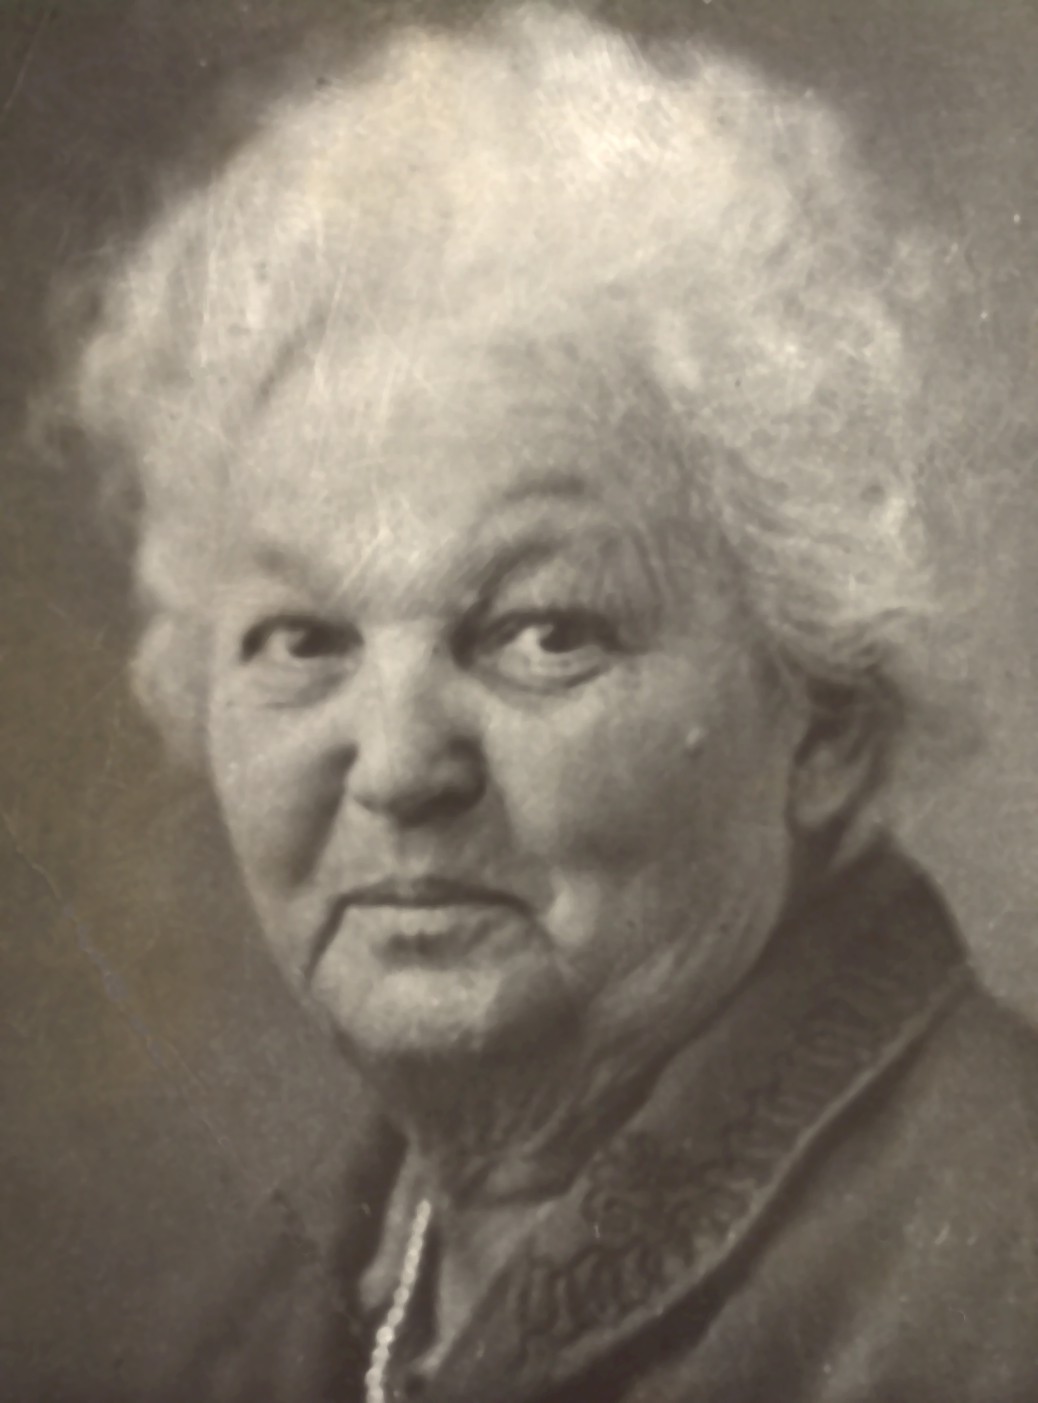 Grandma Elizabeth Guffey